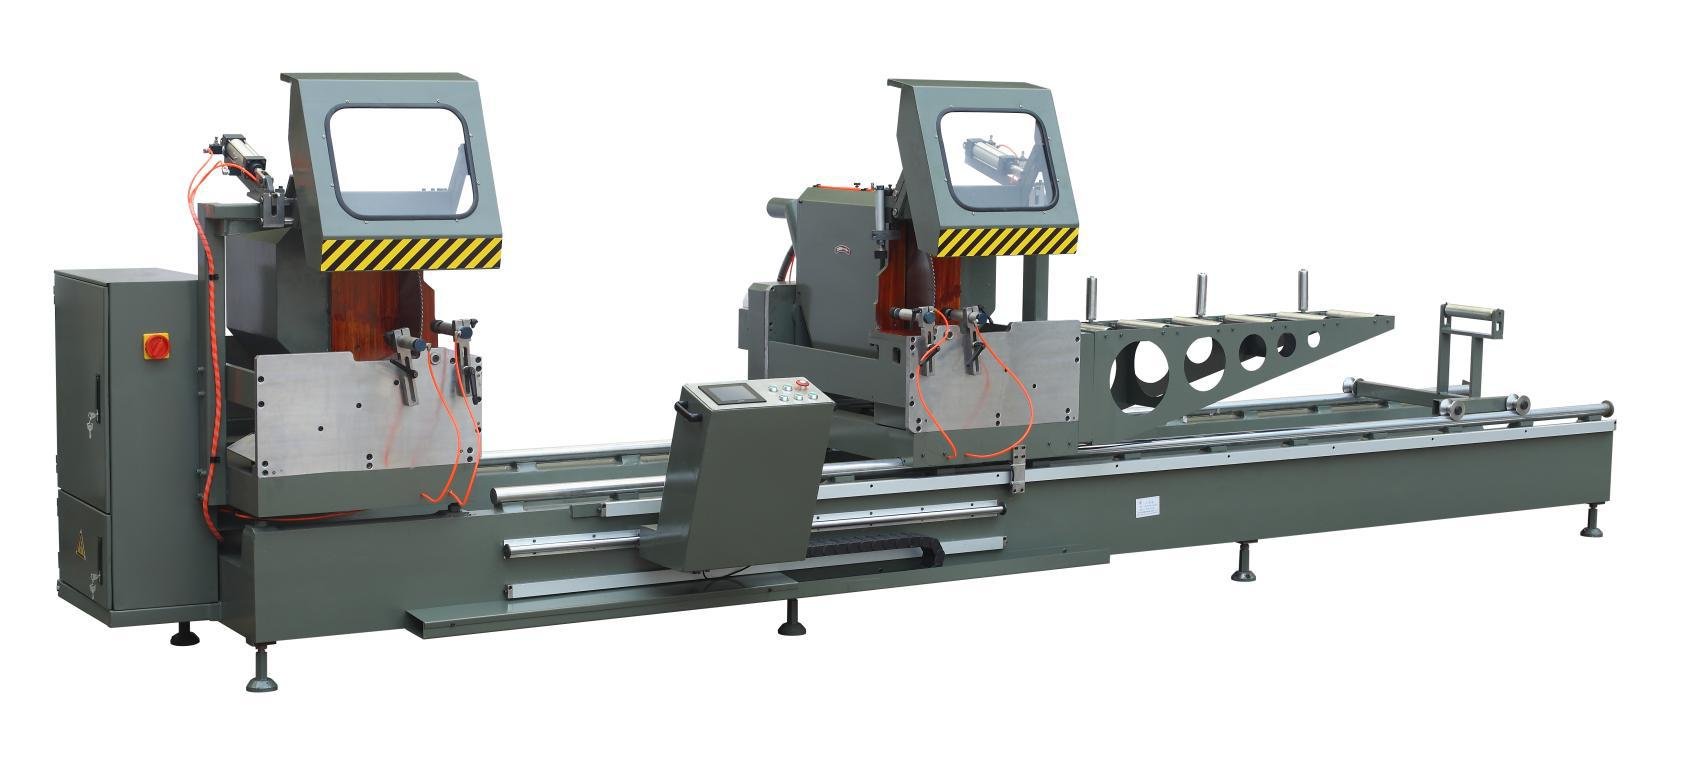 kingtool aluminium machinery Array image33